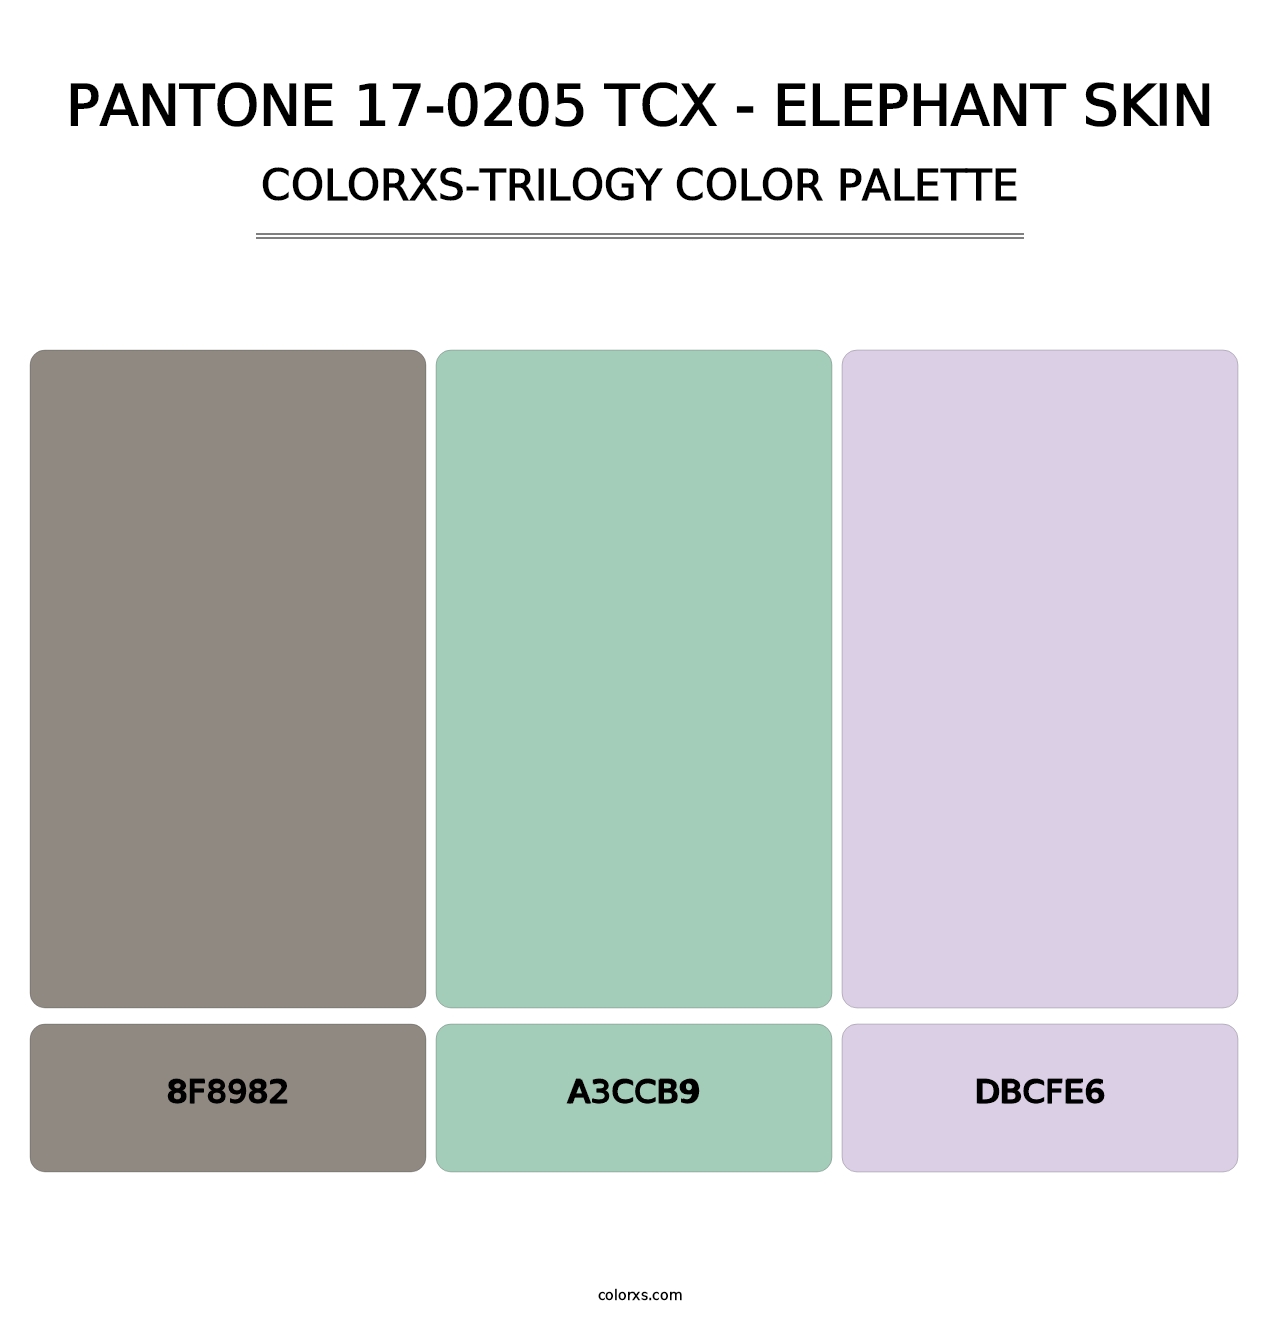 PANTONE 17-0205 TCX - Elephant Skin - Colorxs Trilogy Palette